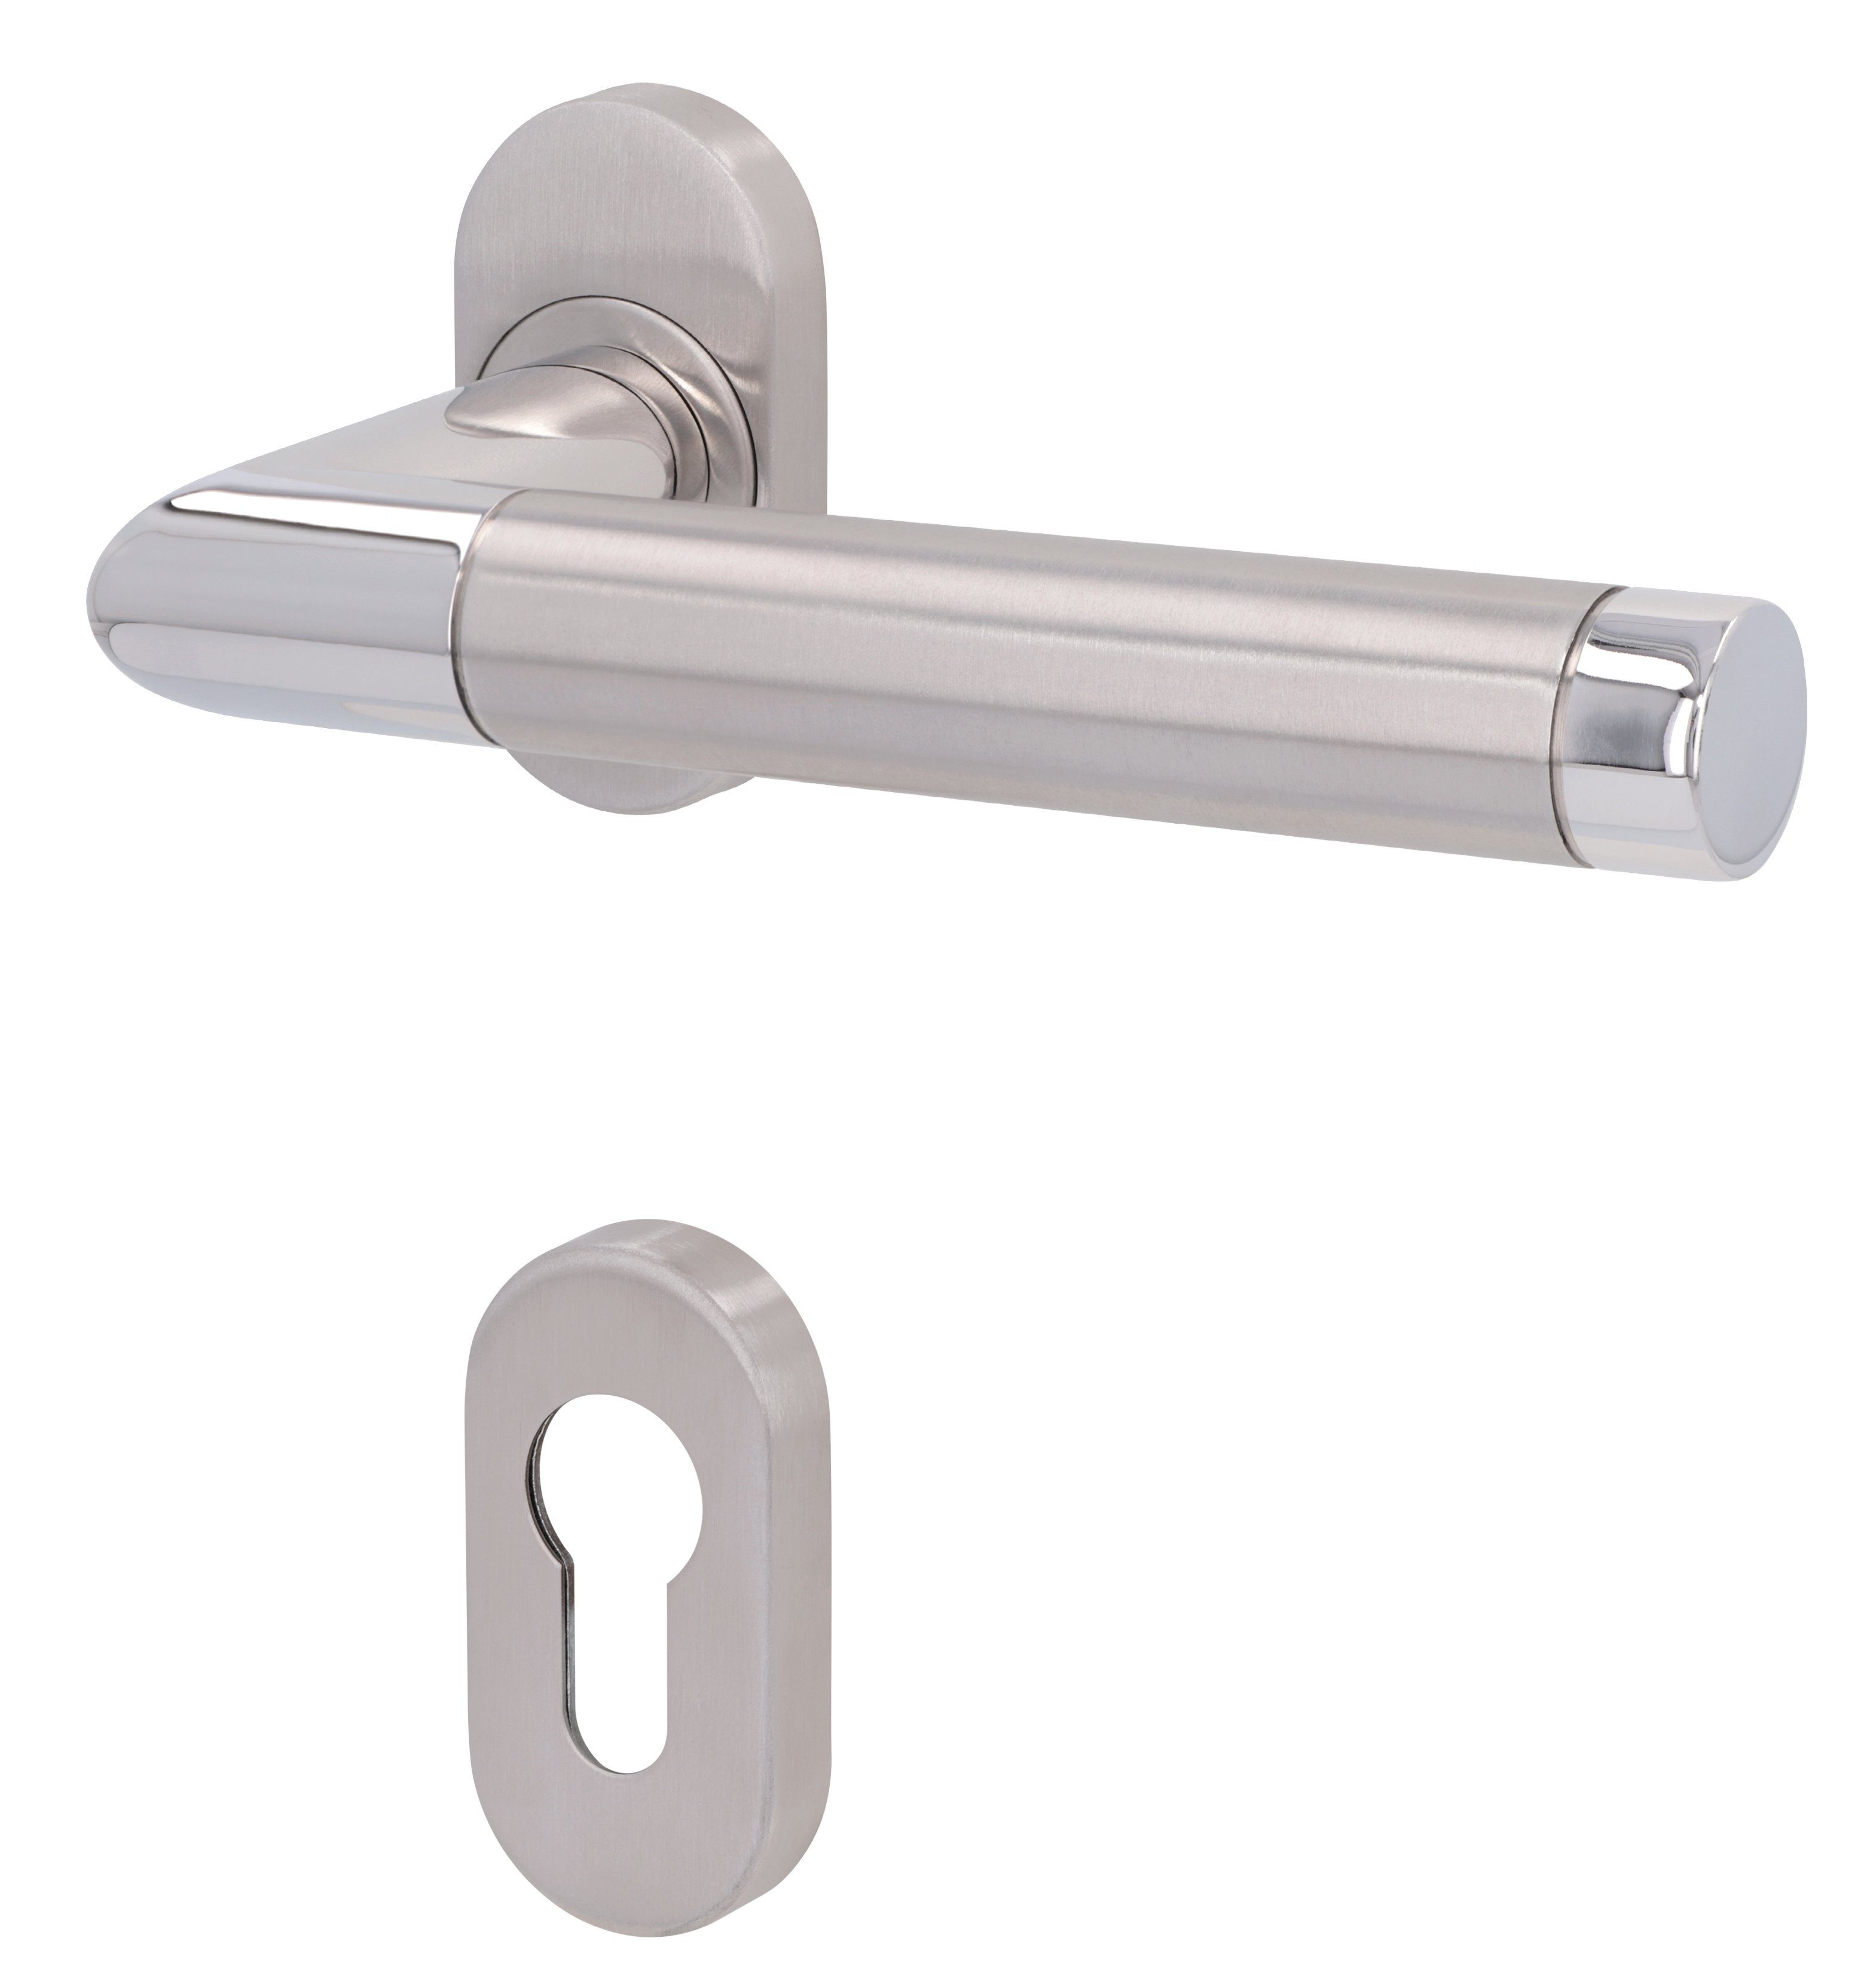 Alpertec Türbeschlag Halbgarnitur für Türen mit Profilzylinderlochung, DIN rechts (1 St), Edelstahl poliert/satiniert